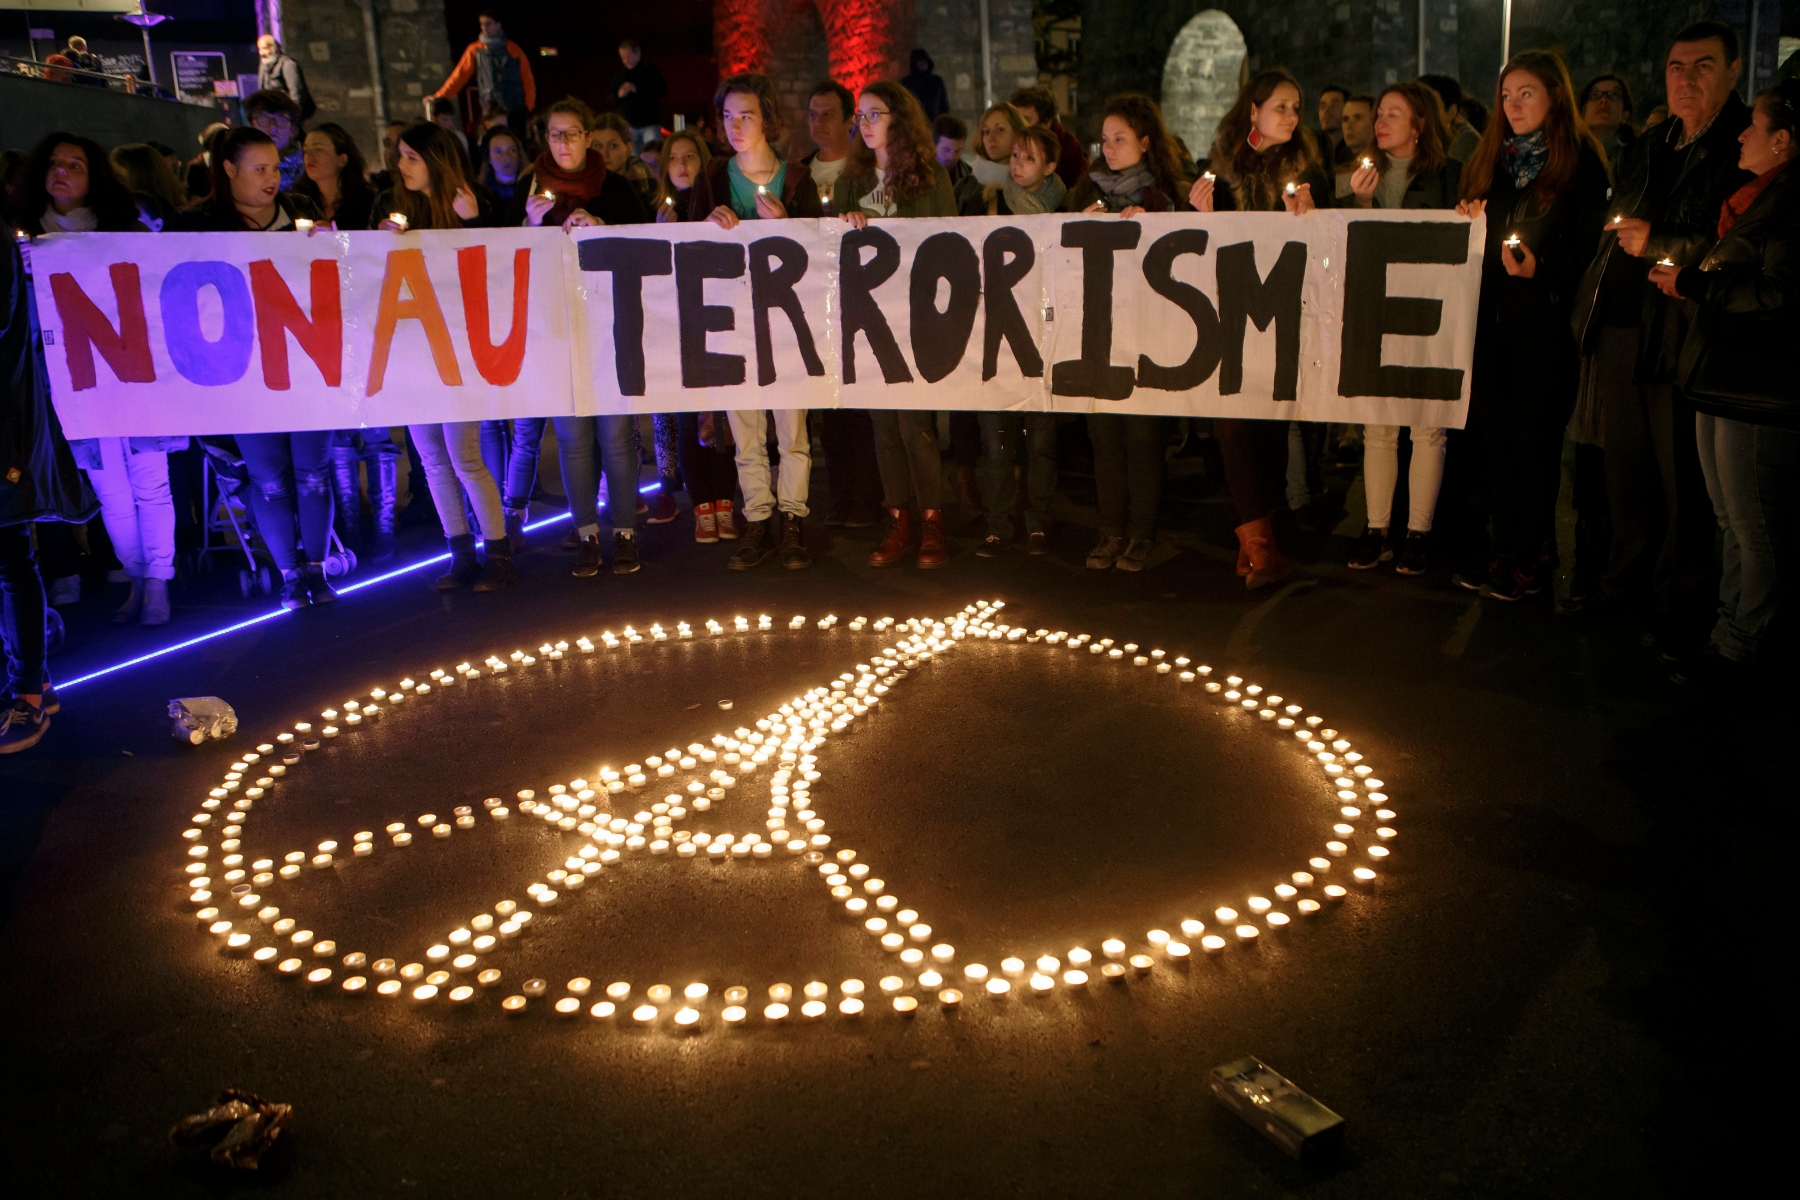 La menace de terrorisme reste bien présente à Genève, surtout avec l'Euro 2016 qui approche en France.
(Photo prise à Lausanne après les attentats de Paris)